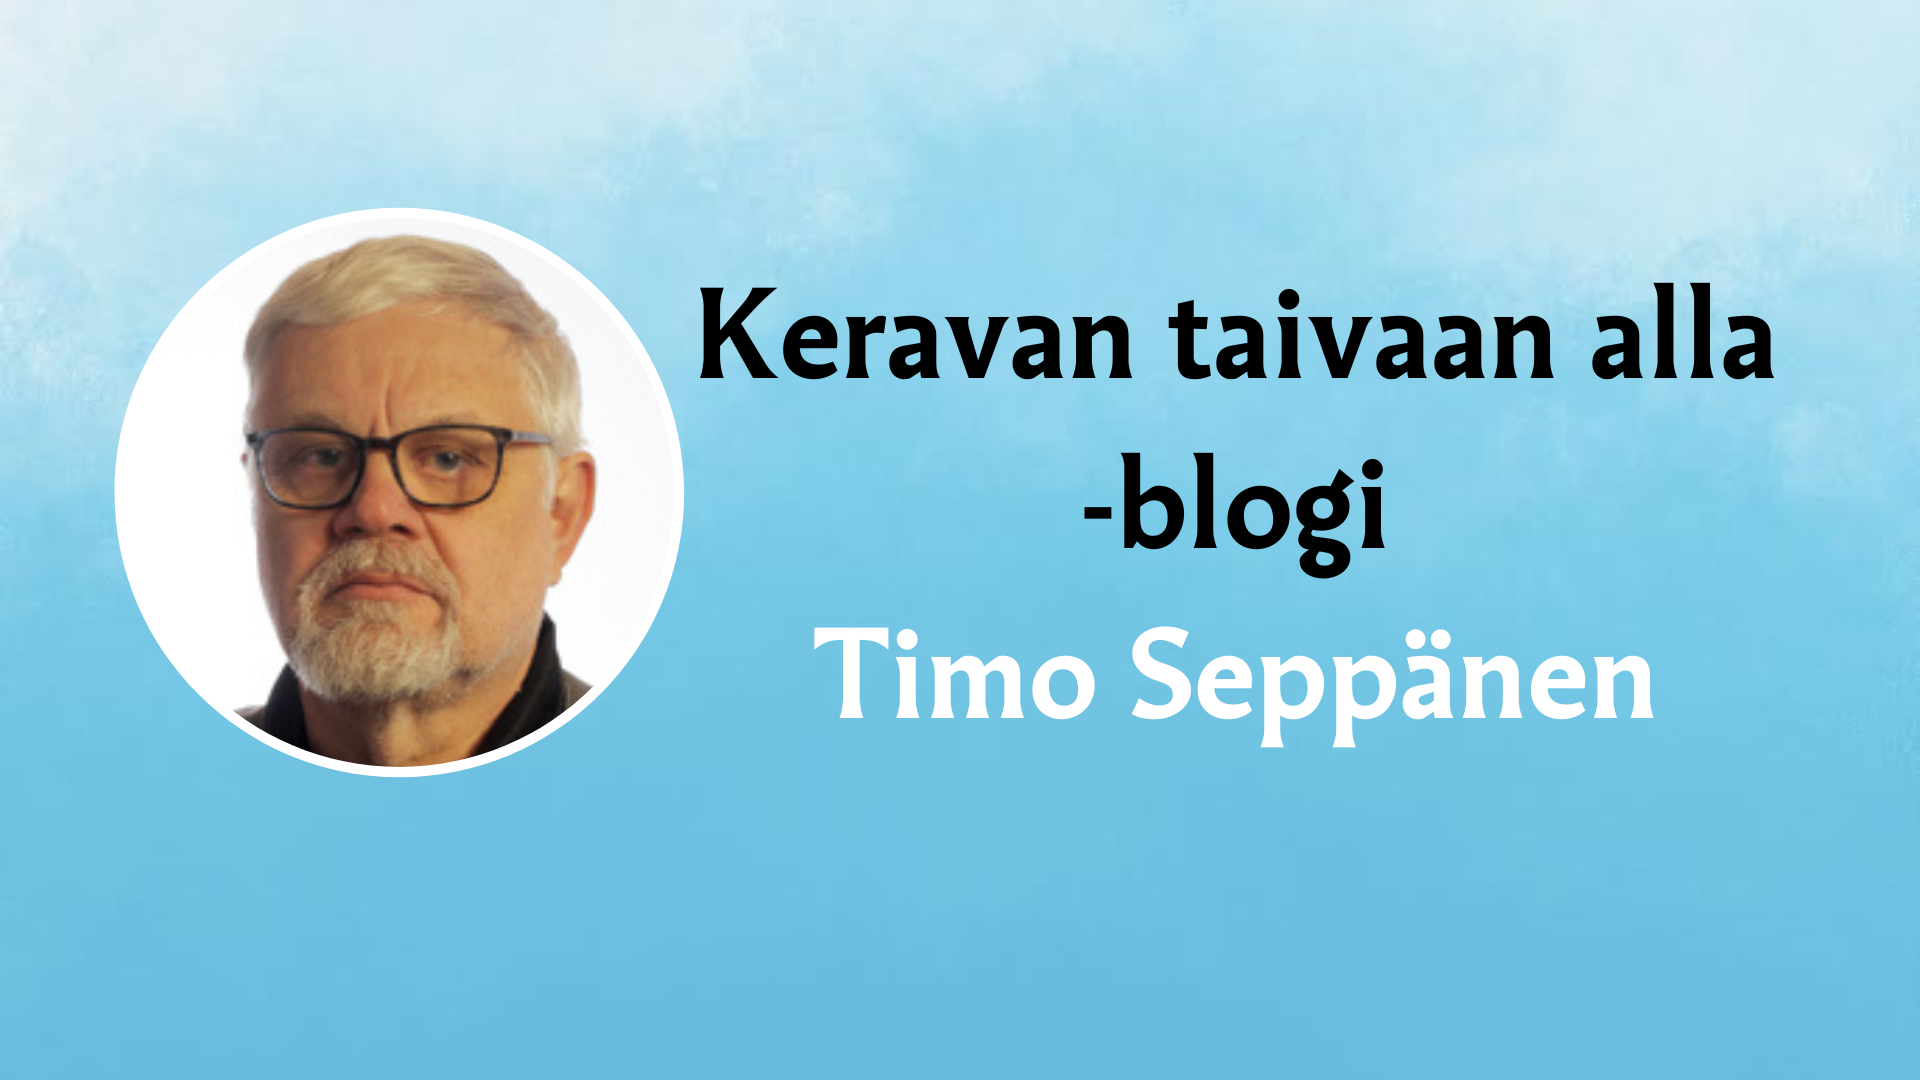 Timo Seppäsen nimi ja kuva sekä teksti Keravan taivaan alla -blogi.